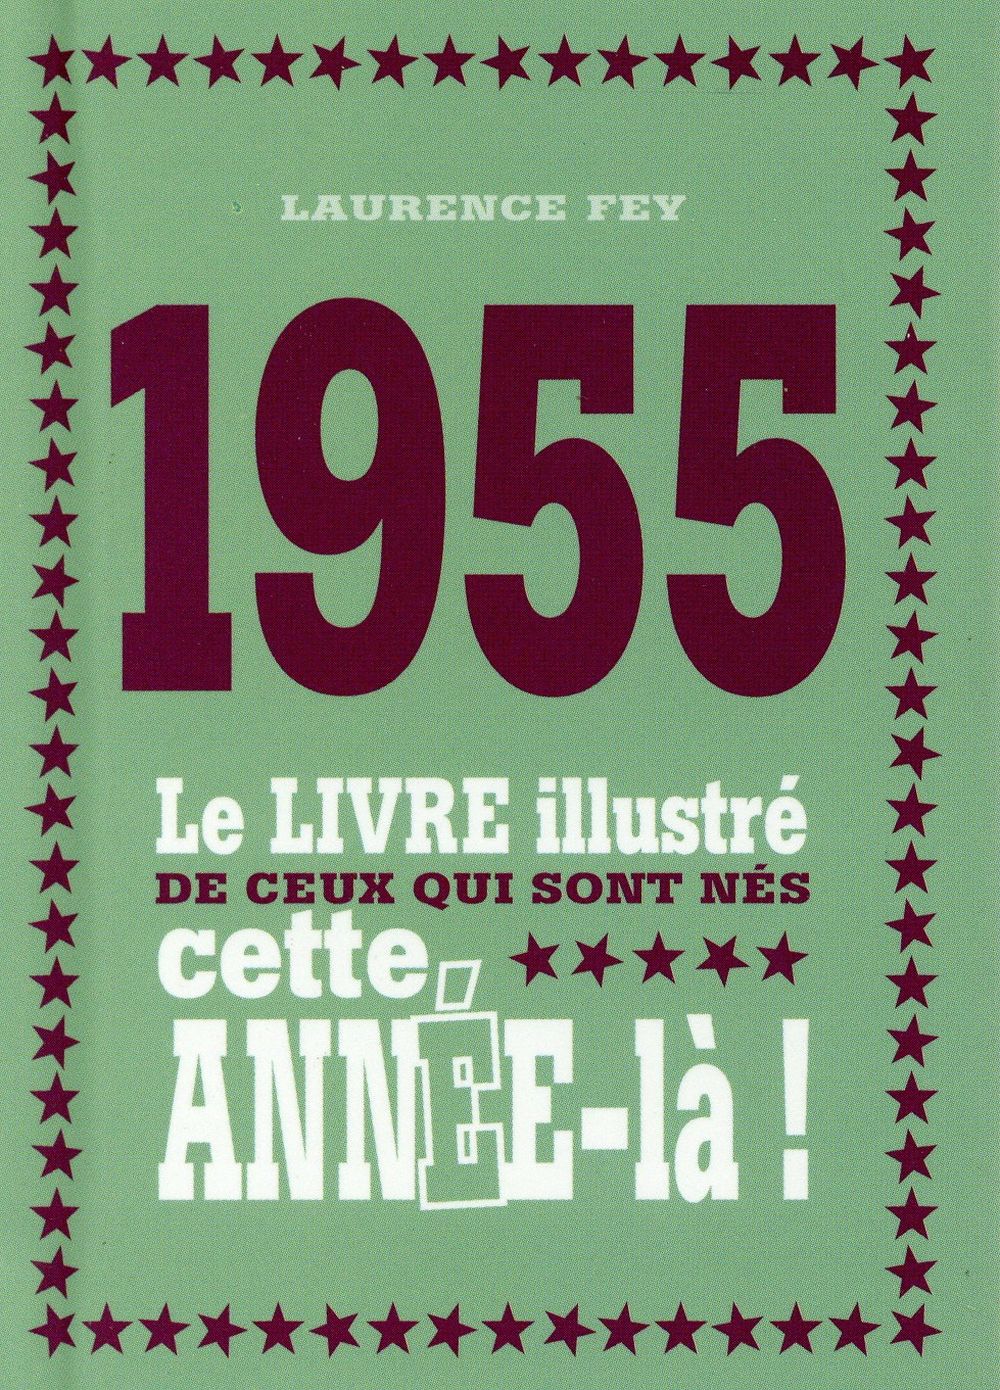 1955 LE LIVRE ILLUSTRE DE CEUX QUI SONT NES CETTE ANNEE-LA !